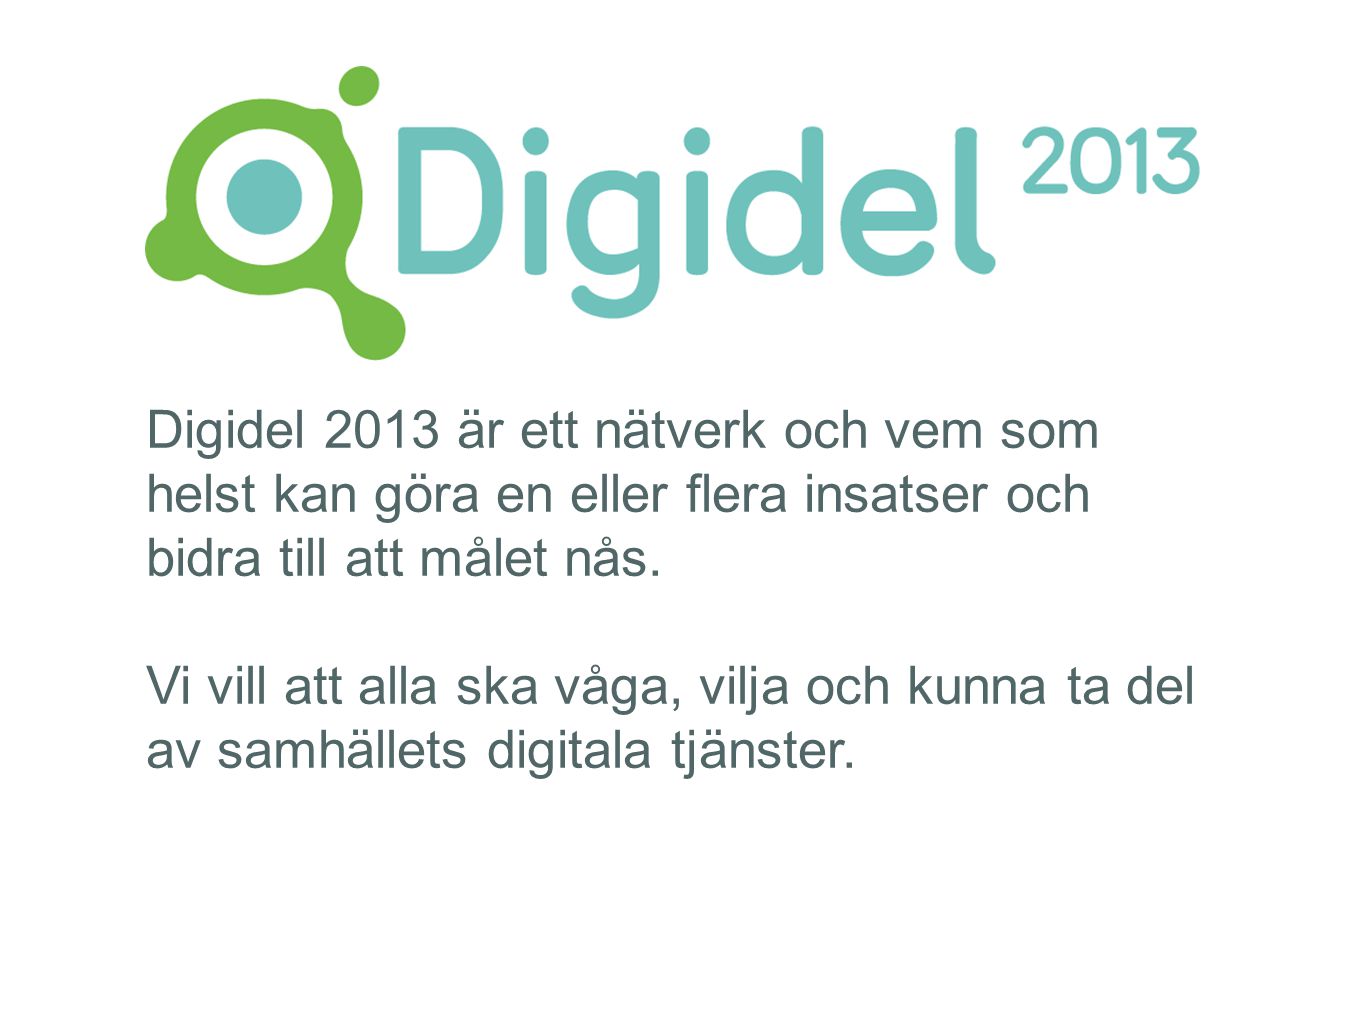 Digidel 2013 är ett nätverk och vem som helst kan göra en eller flera insatser och bidra till att målet nås.